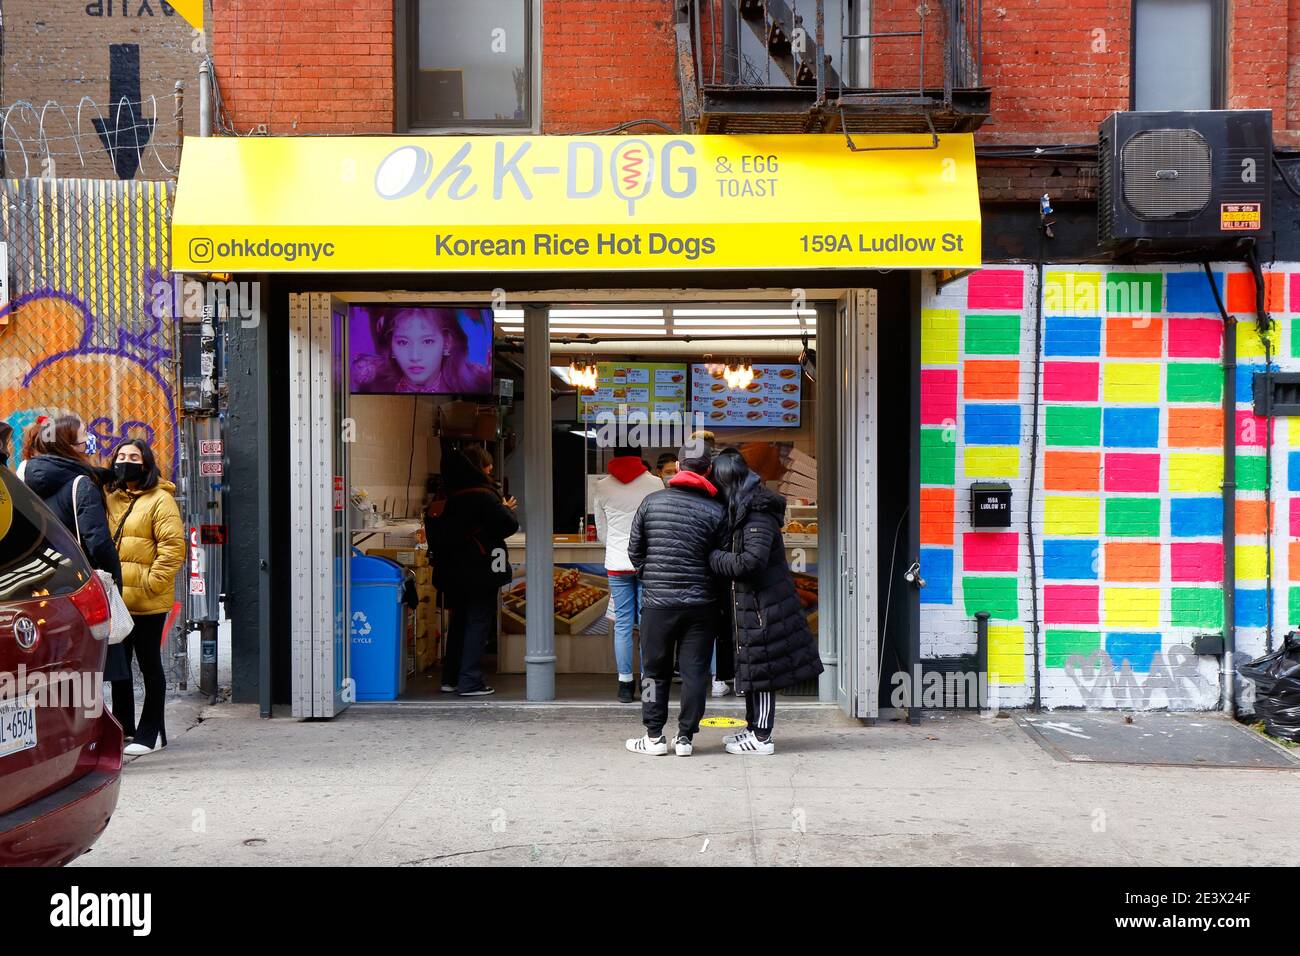 OH K-Dog, 159 Ludlow St, New York, NYC foto del negozio di un hot dog di riso coreano e un negozio di toast alle uova nel quartiere Lower East Side di Manhattan. Foto Stock